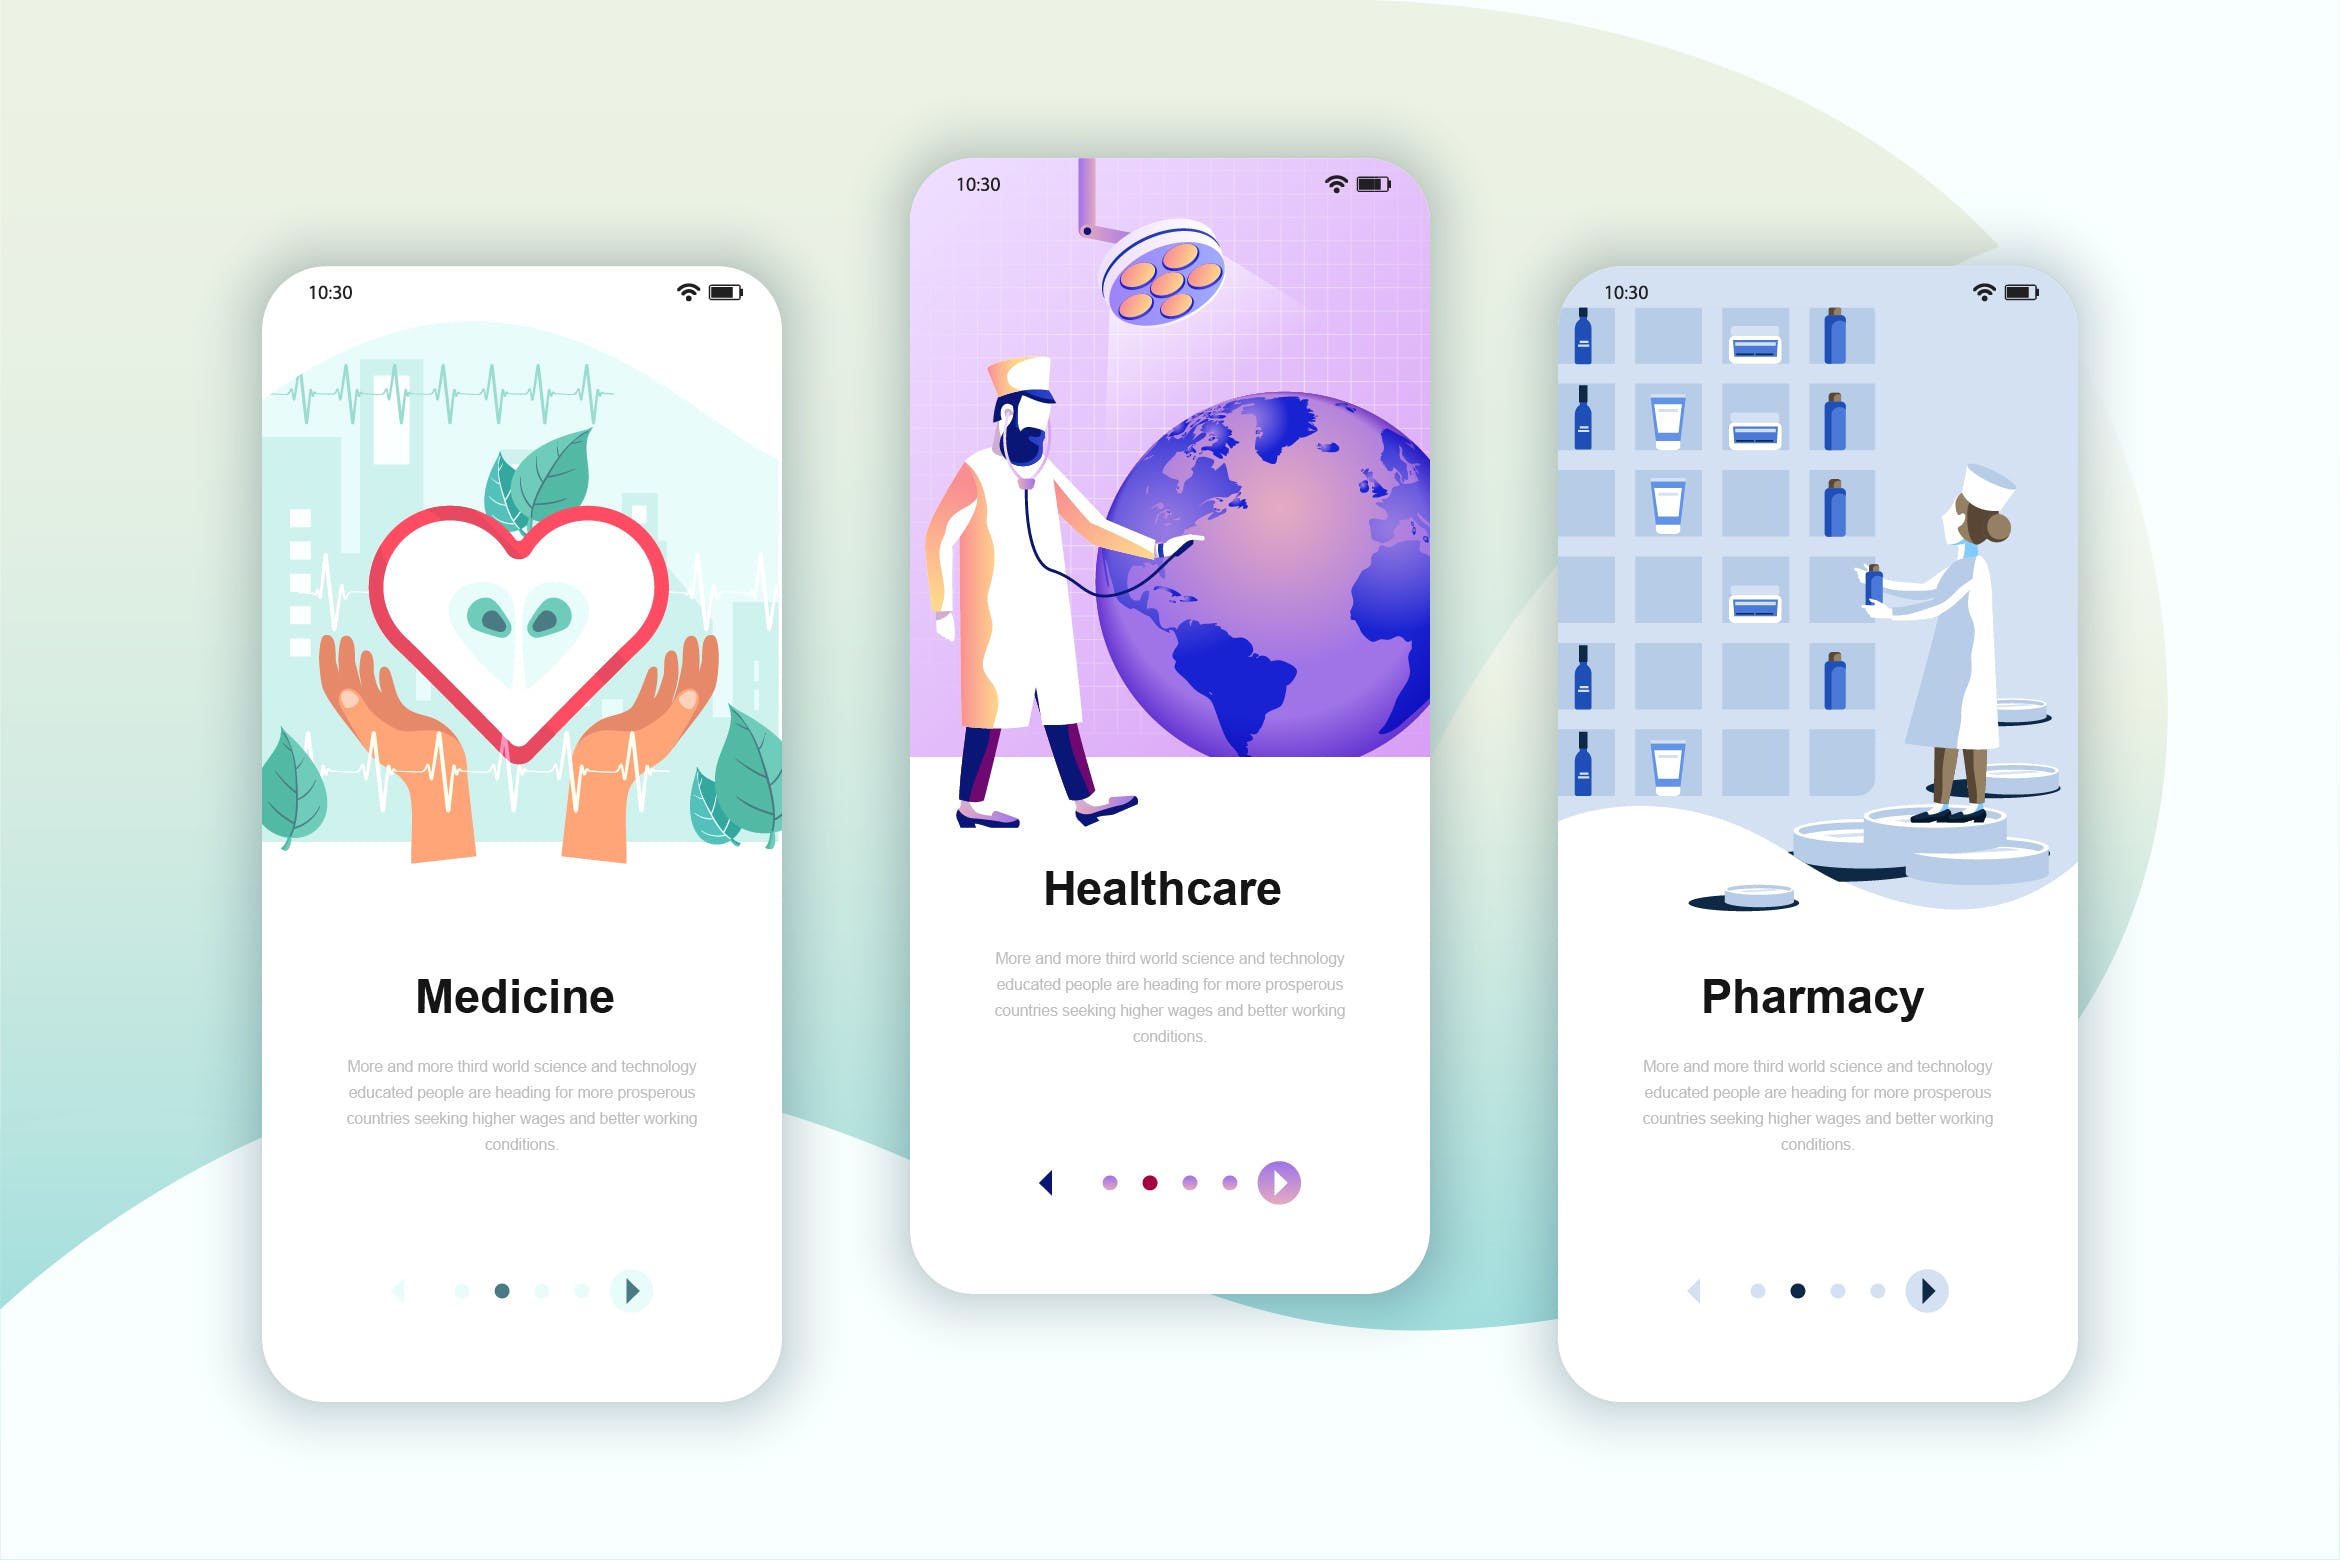 医疗健康主题矢量插画APP引导页启动页设计模板 Instagram Stories Onboarding Screens Mobile App插图